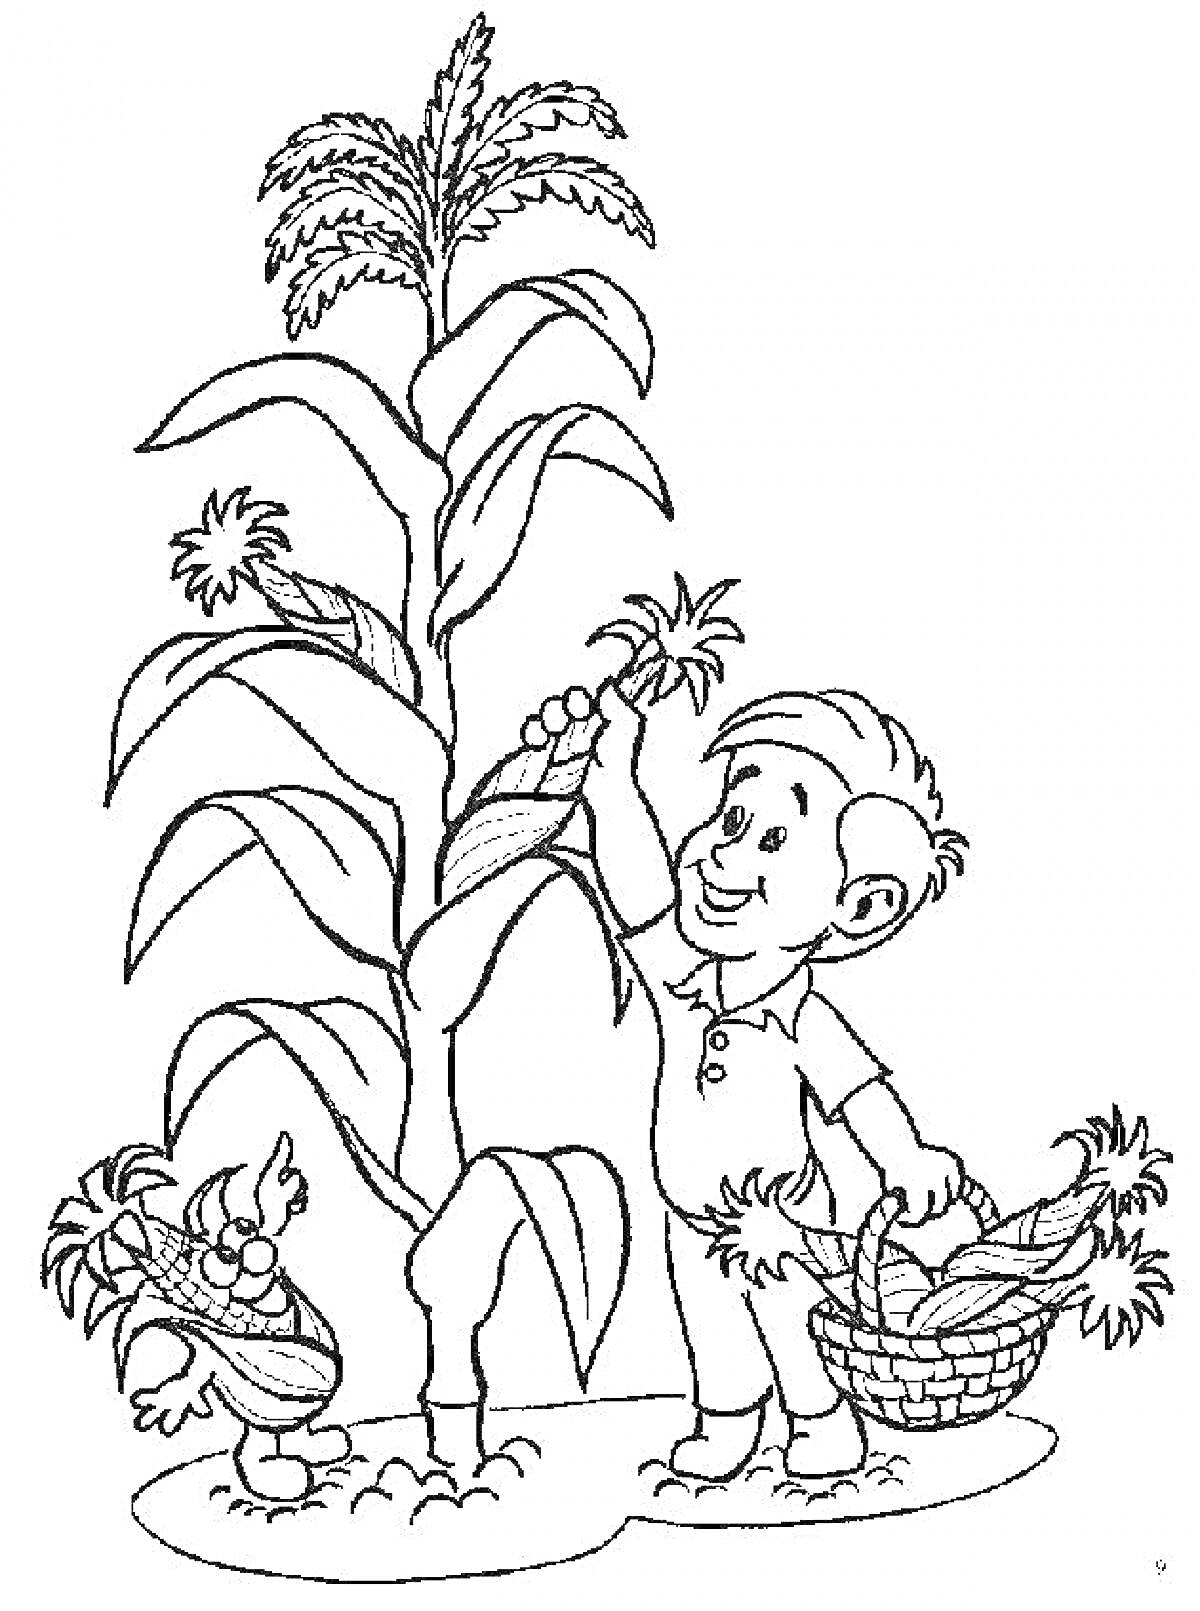 Раскраска мальчик с кукурузой, корзина с кукурузой, цветы кукурузы